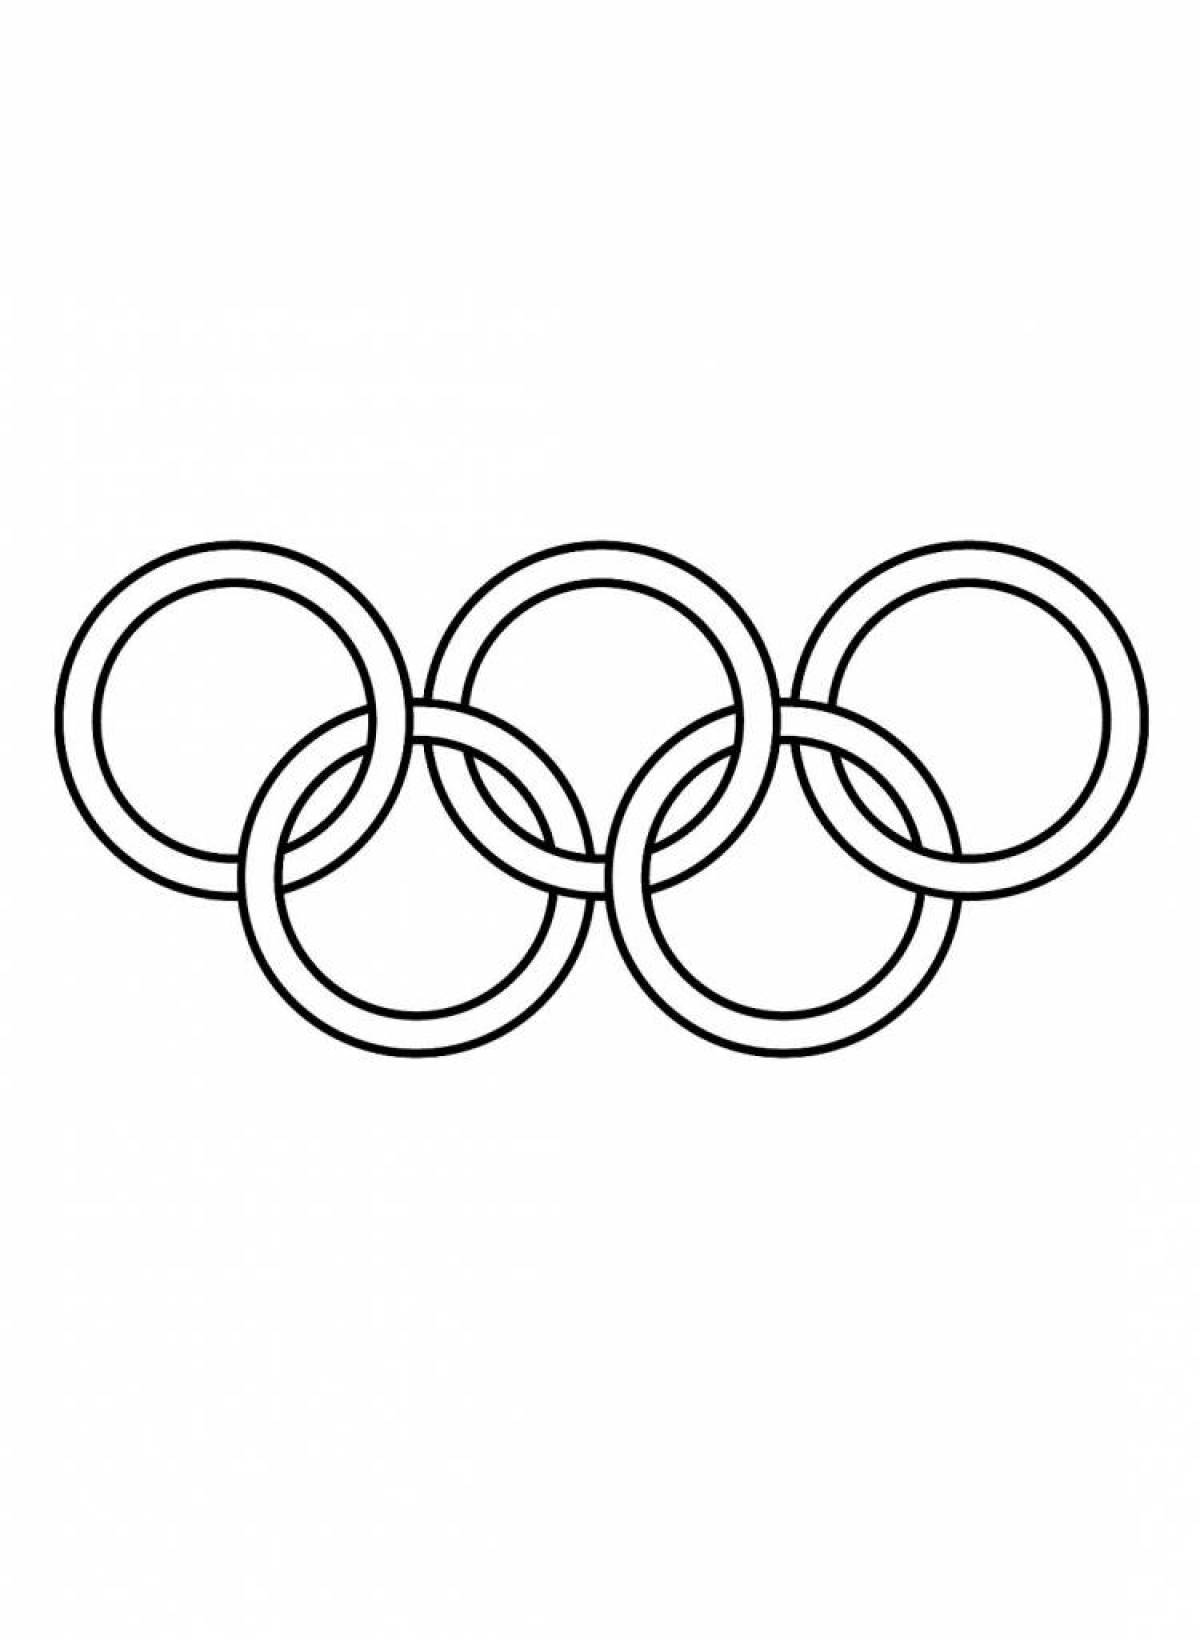 Раскраска изысканные олимпийские кольца